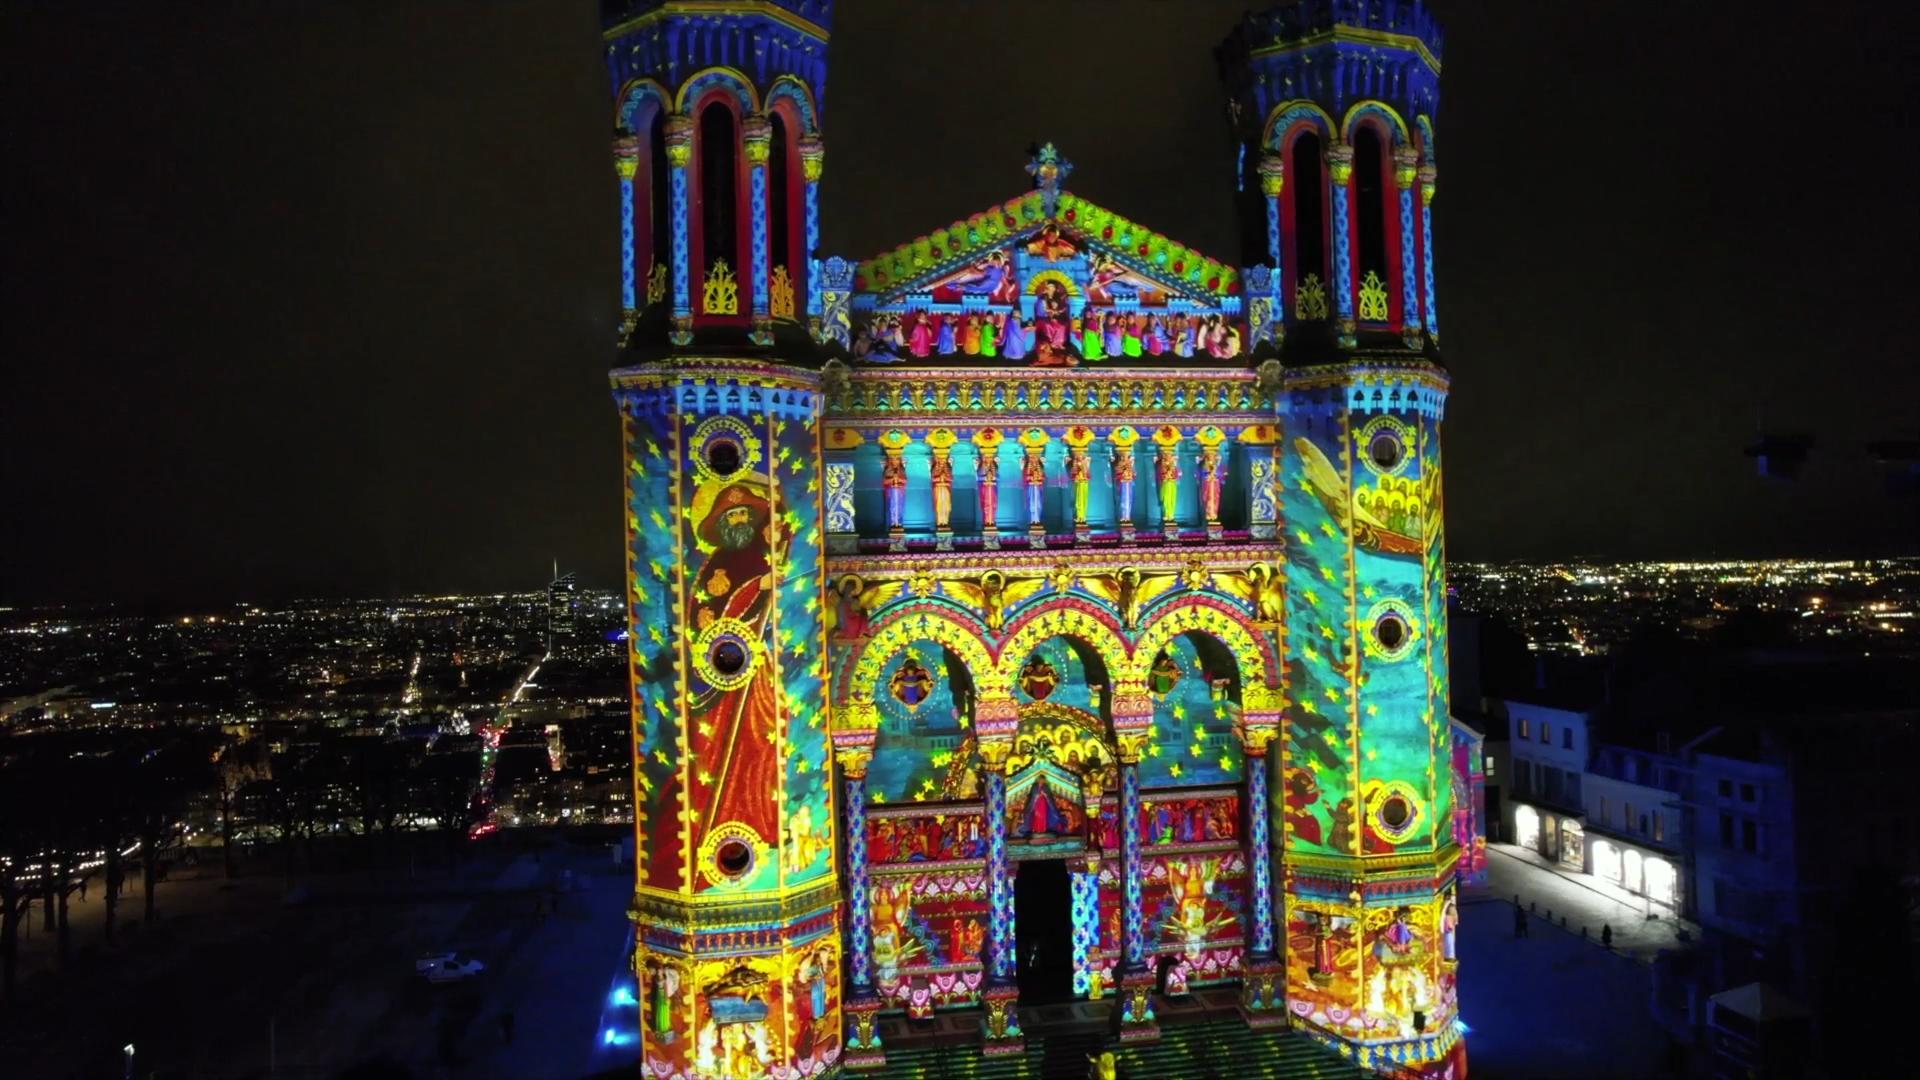 projection lumineuse cathédrale scénotechnique